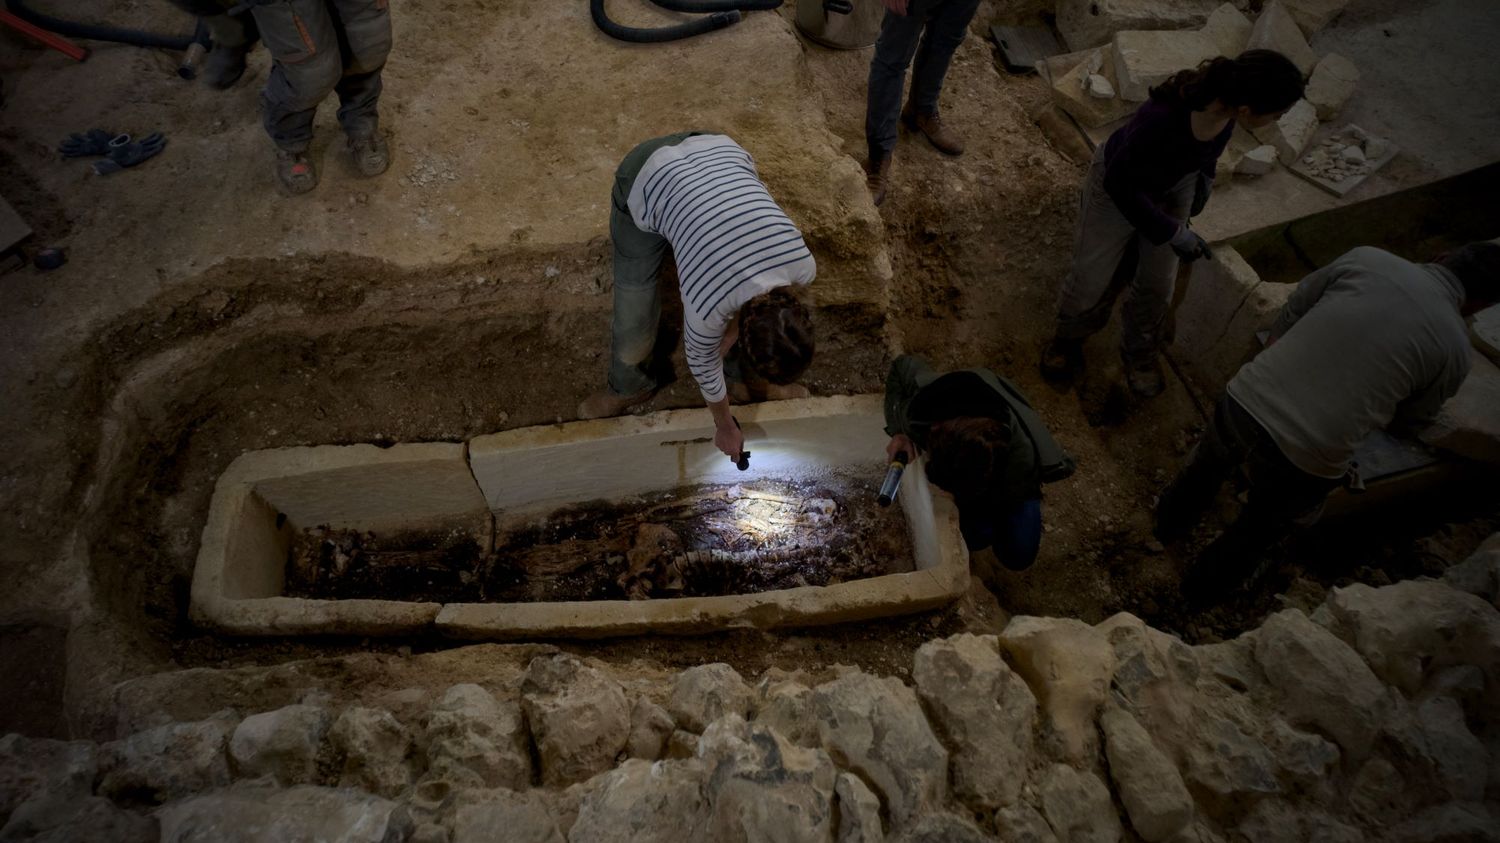 Un sarcophage mérovingien scellé depuis 15 siècles découvert par des archéologues dans une église de Chartres